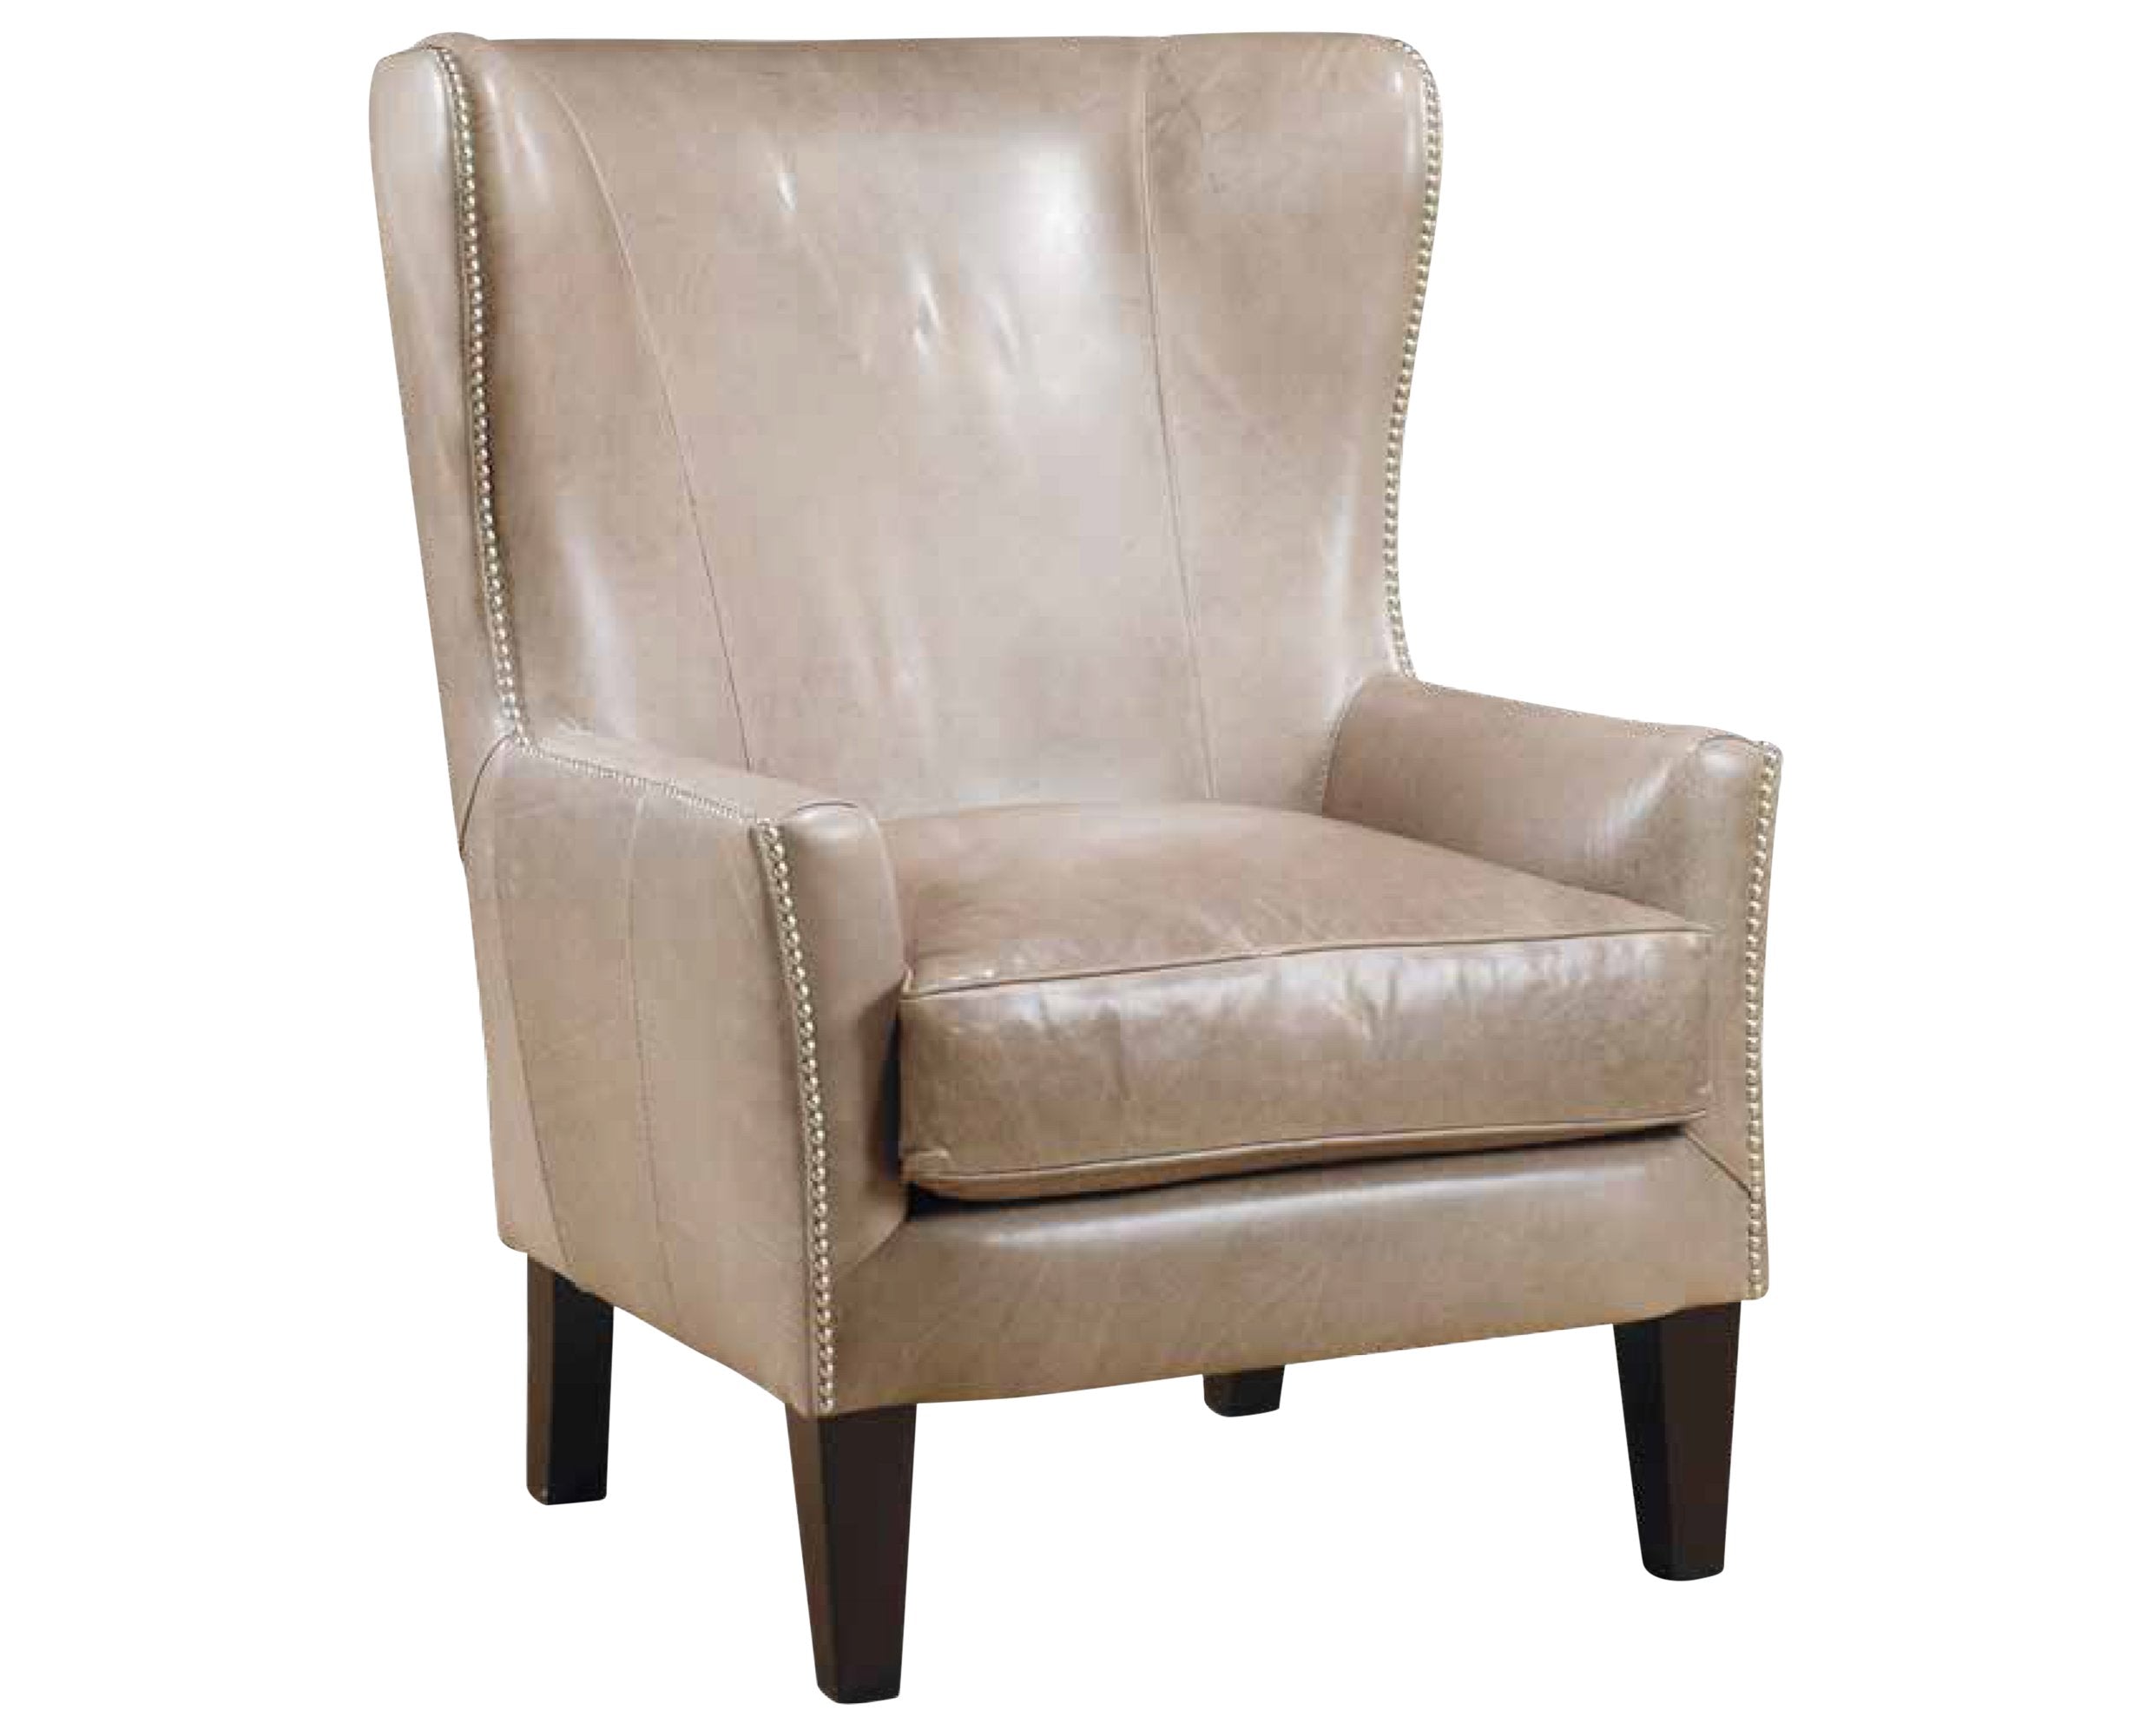 Chair as Shown | Legacy Legend Chair | Valley Ridge Furniture